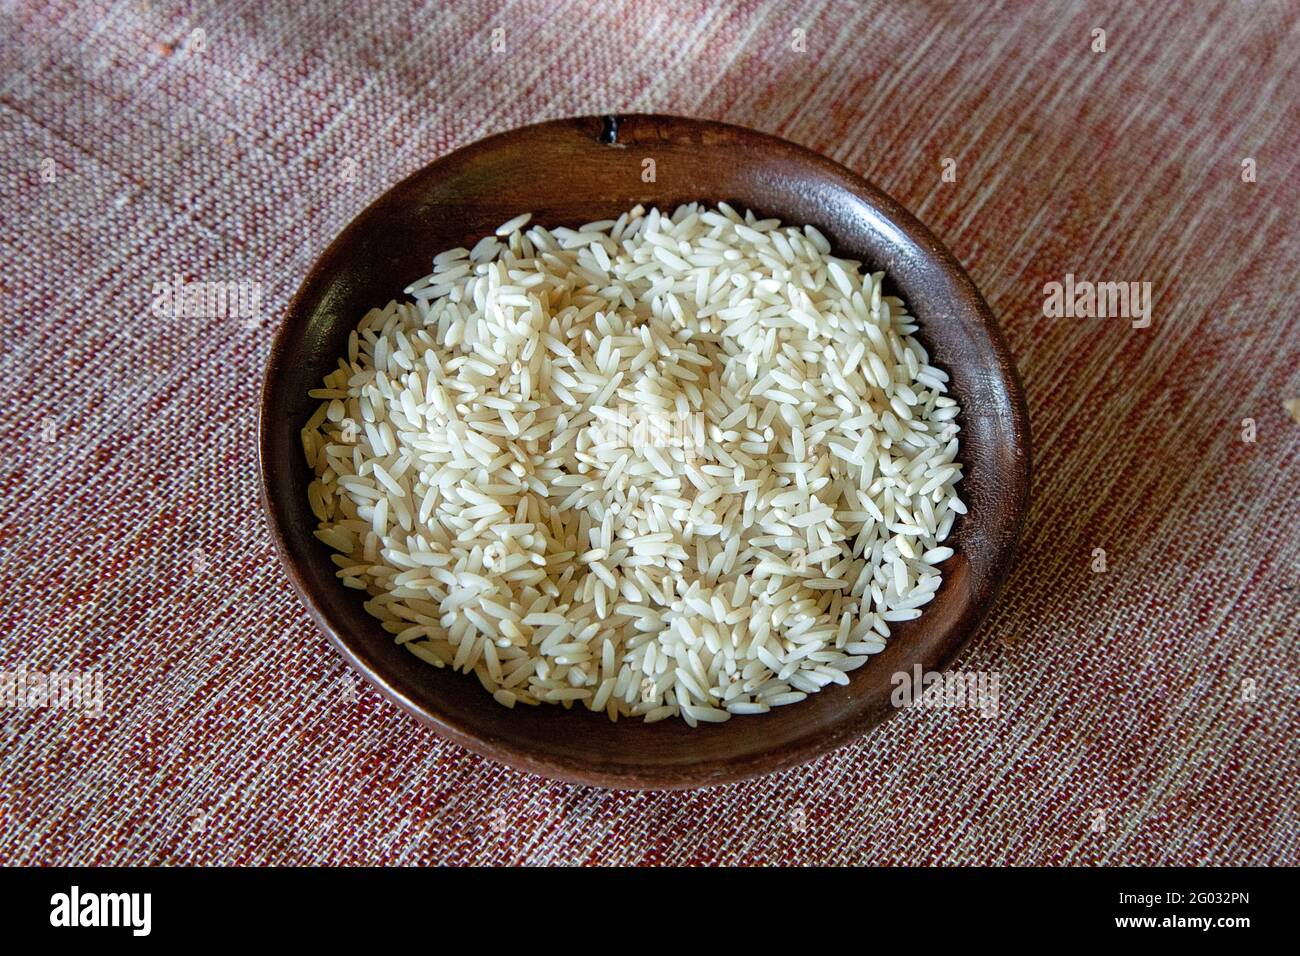 Ein wichtiger Bestandteil der persischen Küche ist Reis. Daher wird eine große Menge der Ernte für den Eigenverbrauch benötigt. Dennoch bleibt genügen Stock Photo